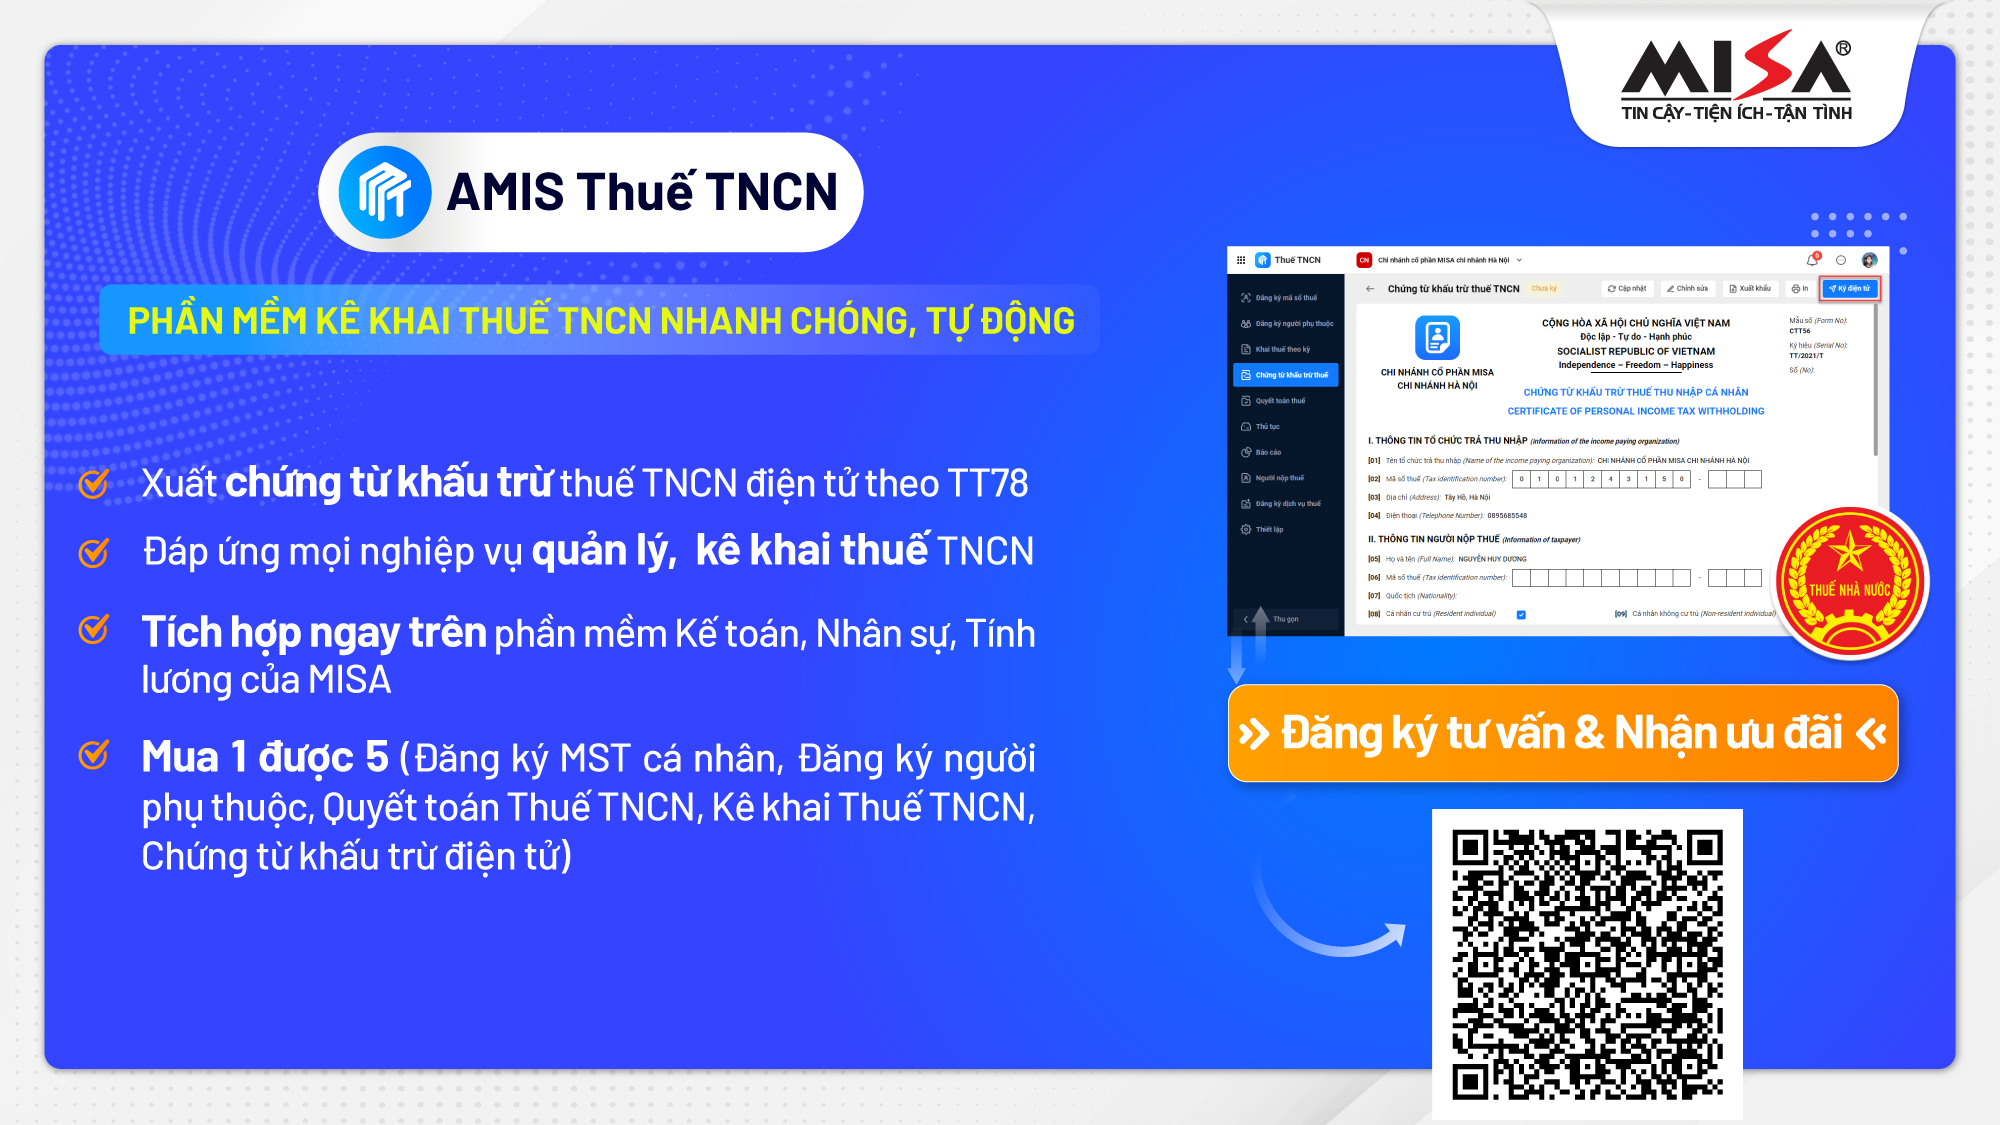 đăng ký dùng thử phần mềm thuế TNCN